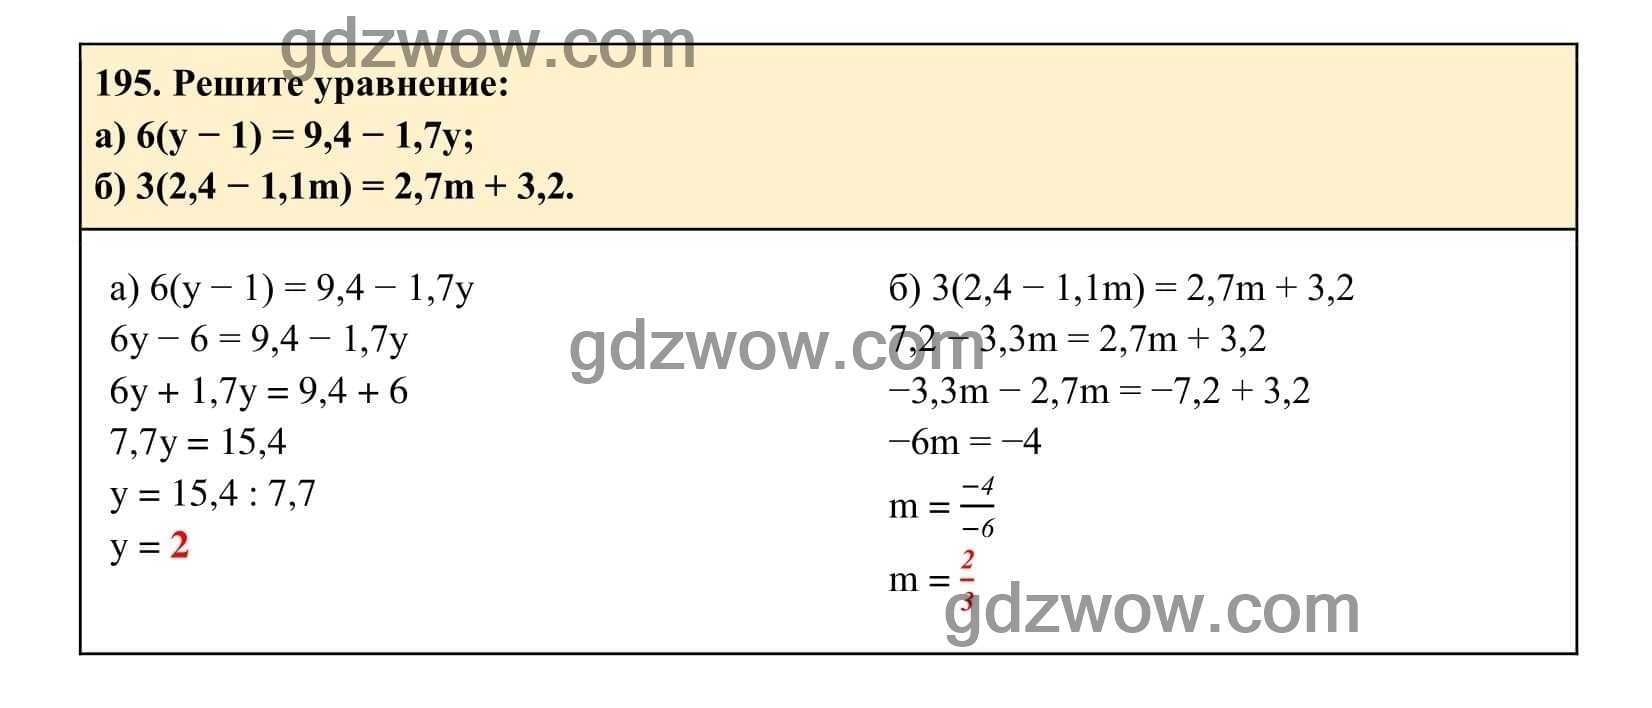 Упражнение 195 - ГДЗ по Алгебре 7 класс Учебник Макарычев (решебник) - GDZwow